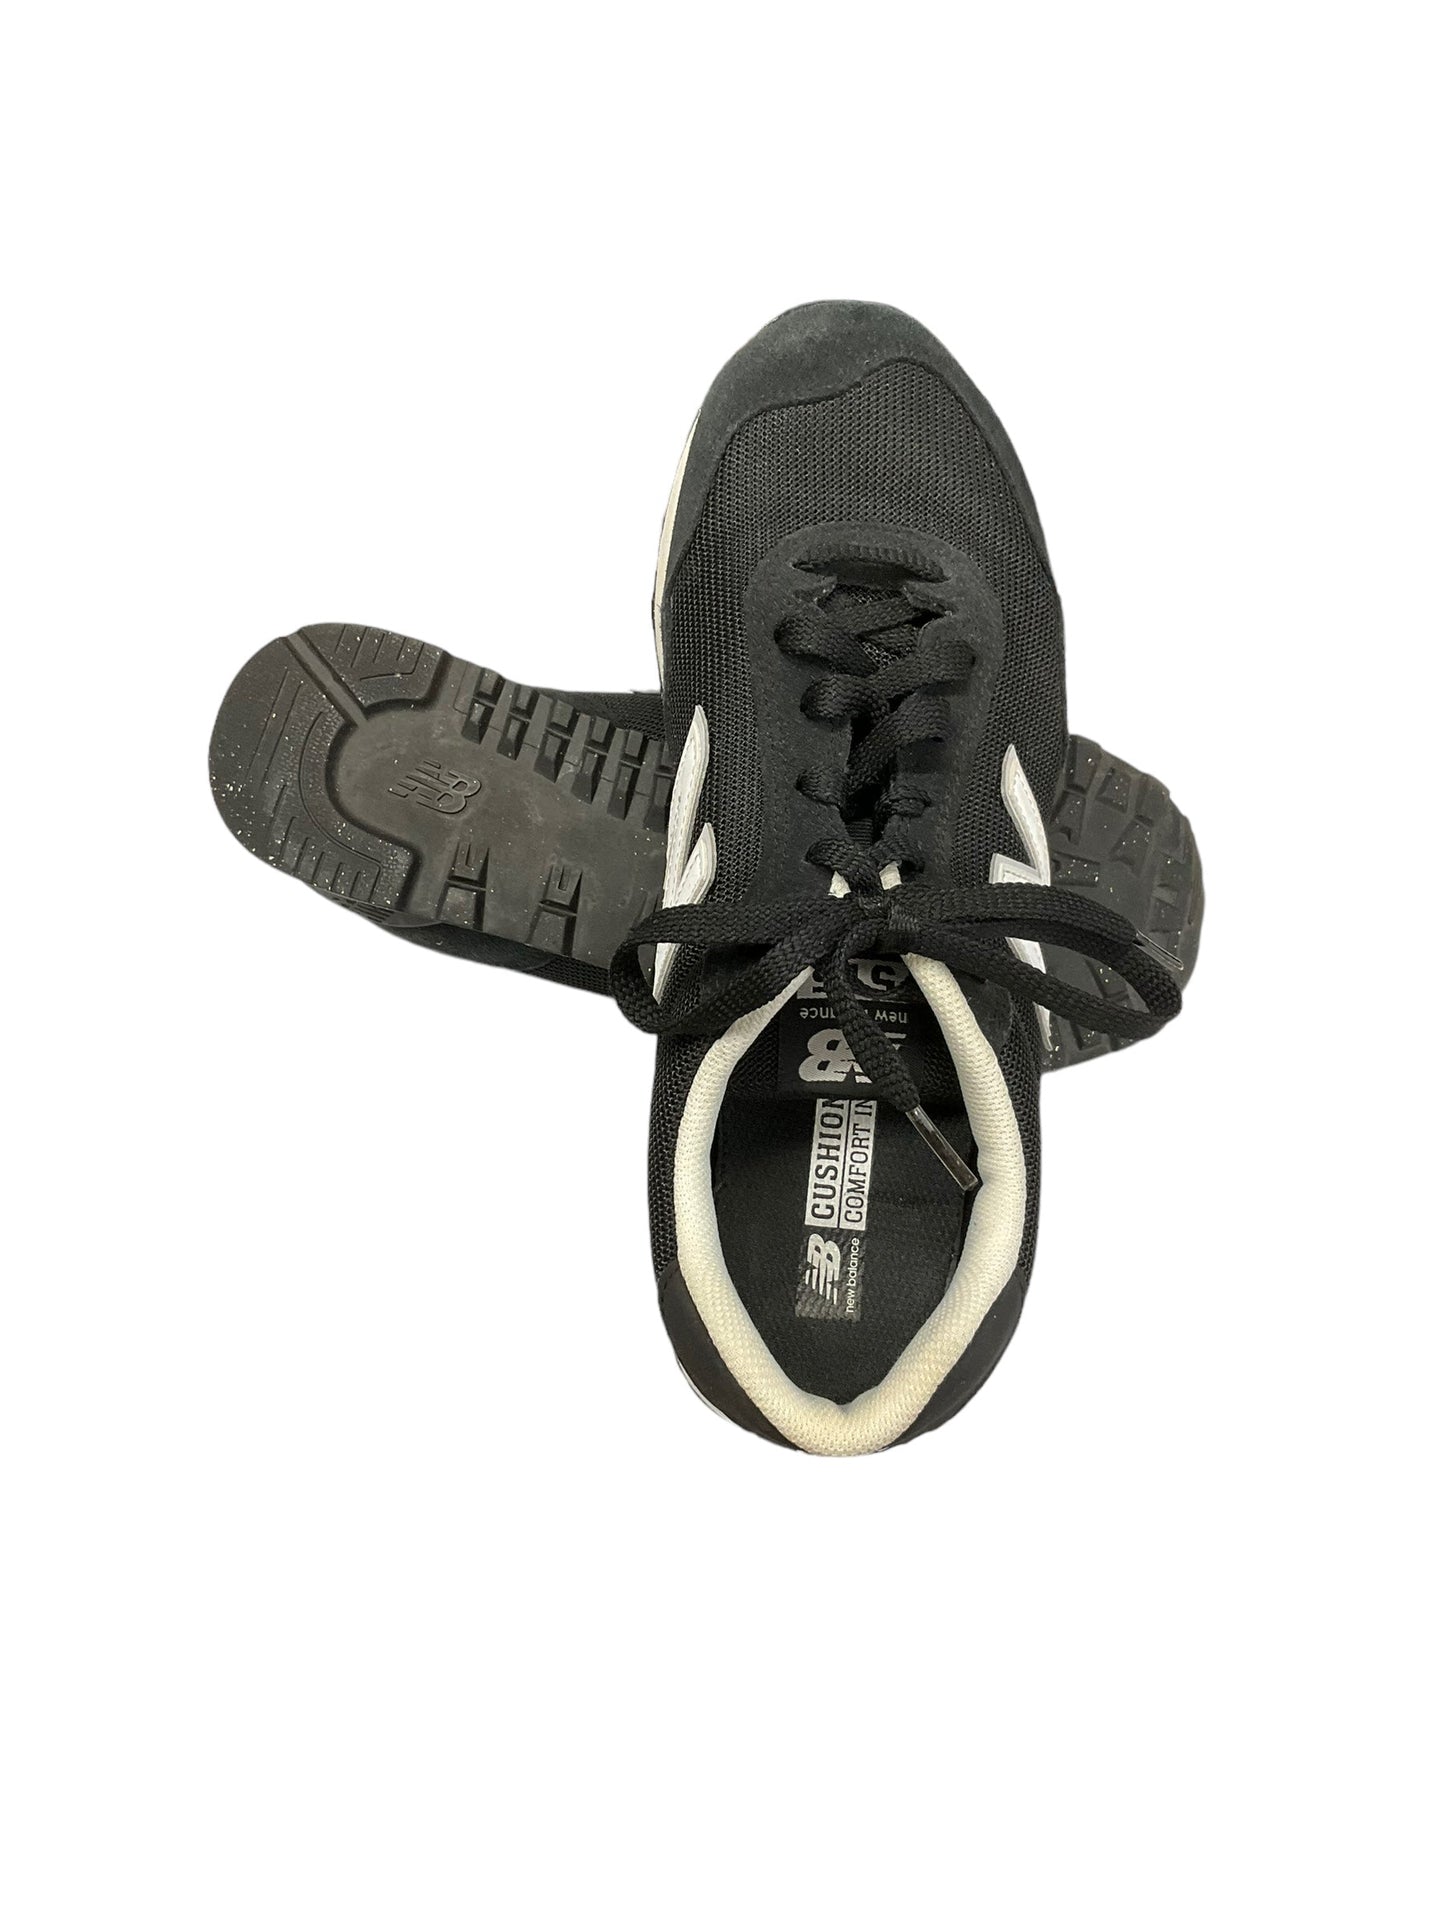 Black Shoes Athletic New Balance, Size 9